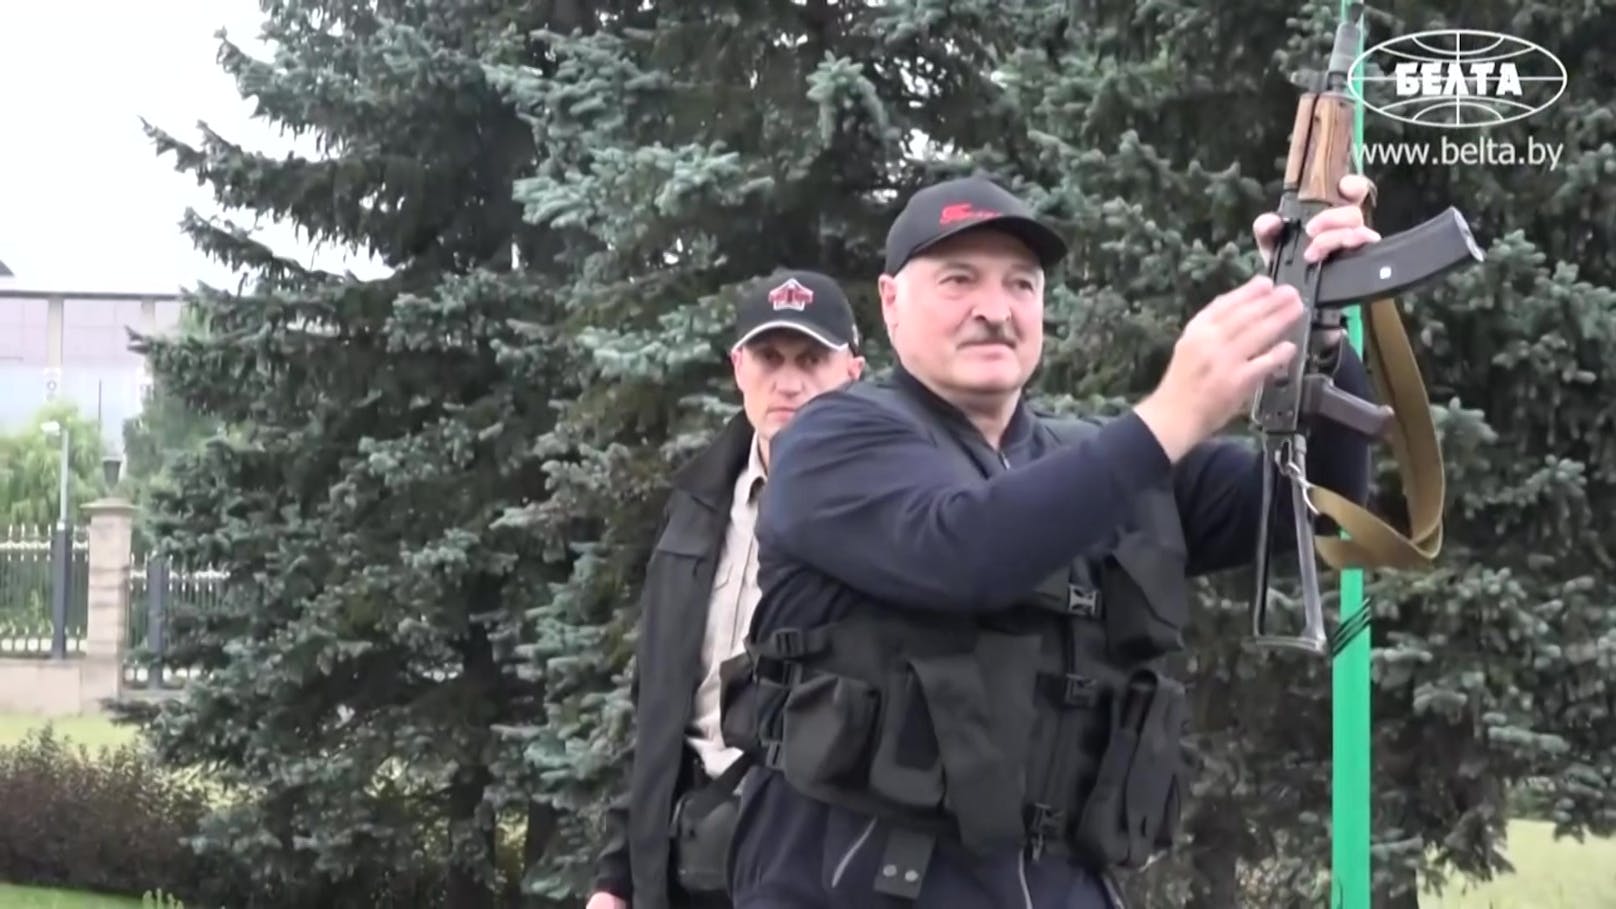 Lukaschenko steigt mit Kalaschnikow in Heli